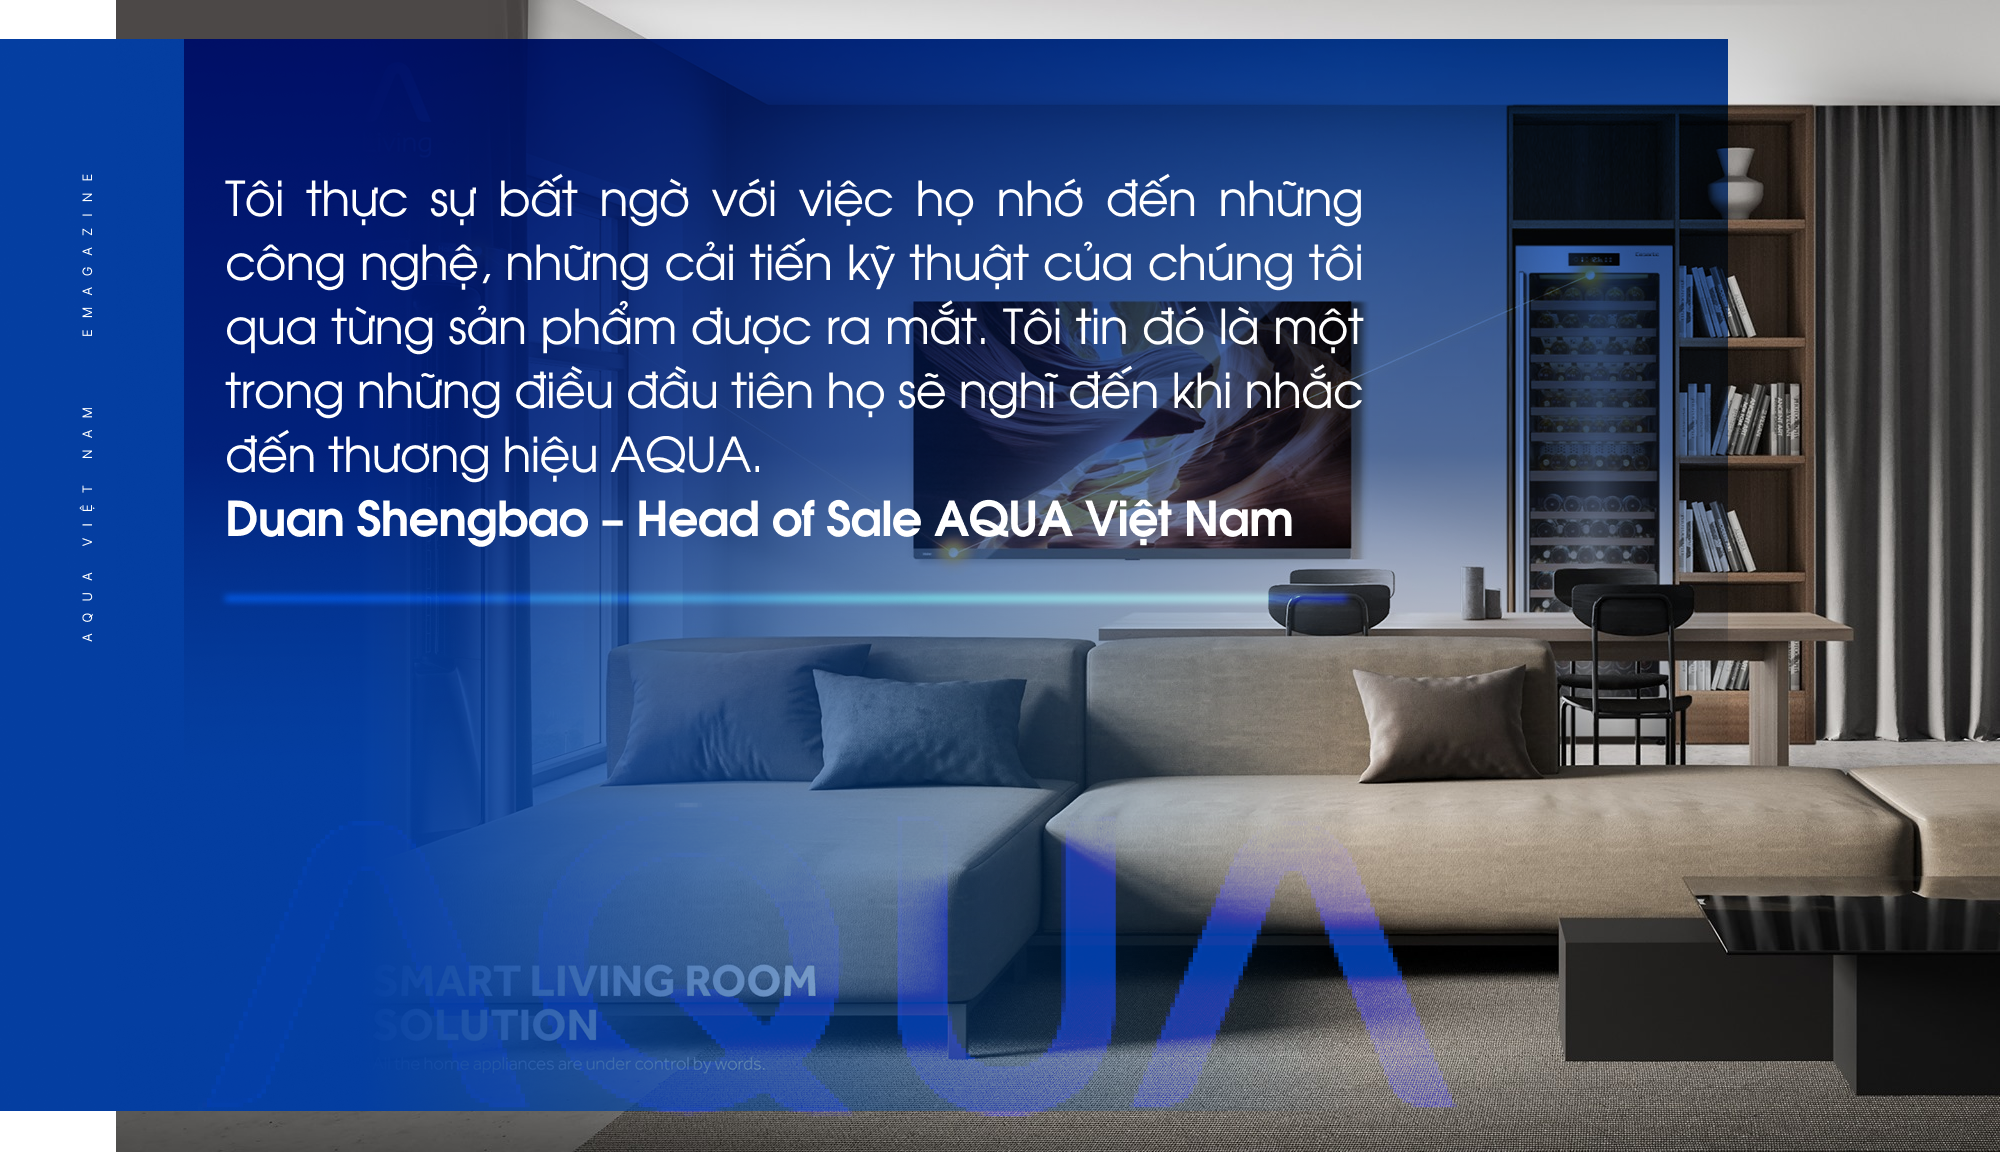 AQUA Việt Nam - Hành trình 26 năm cải tiến công nghệ khơi nguồn cảm hứng sống - Ảnh 4.